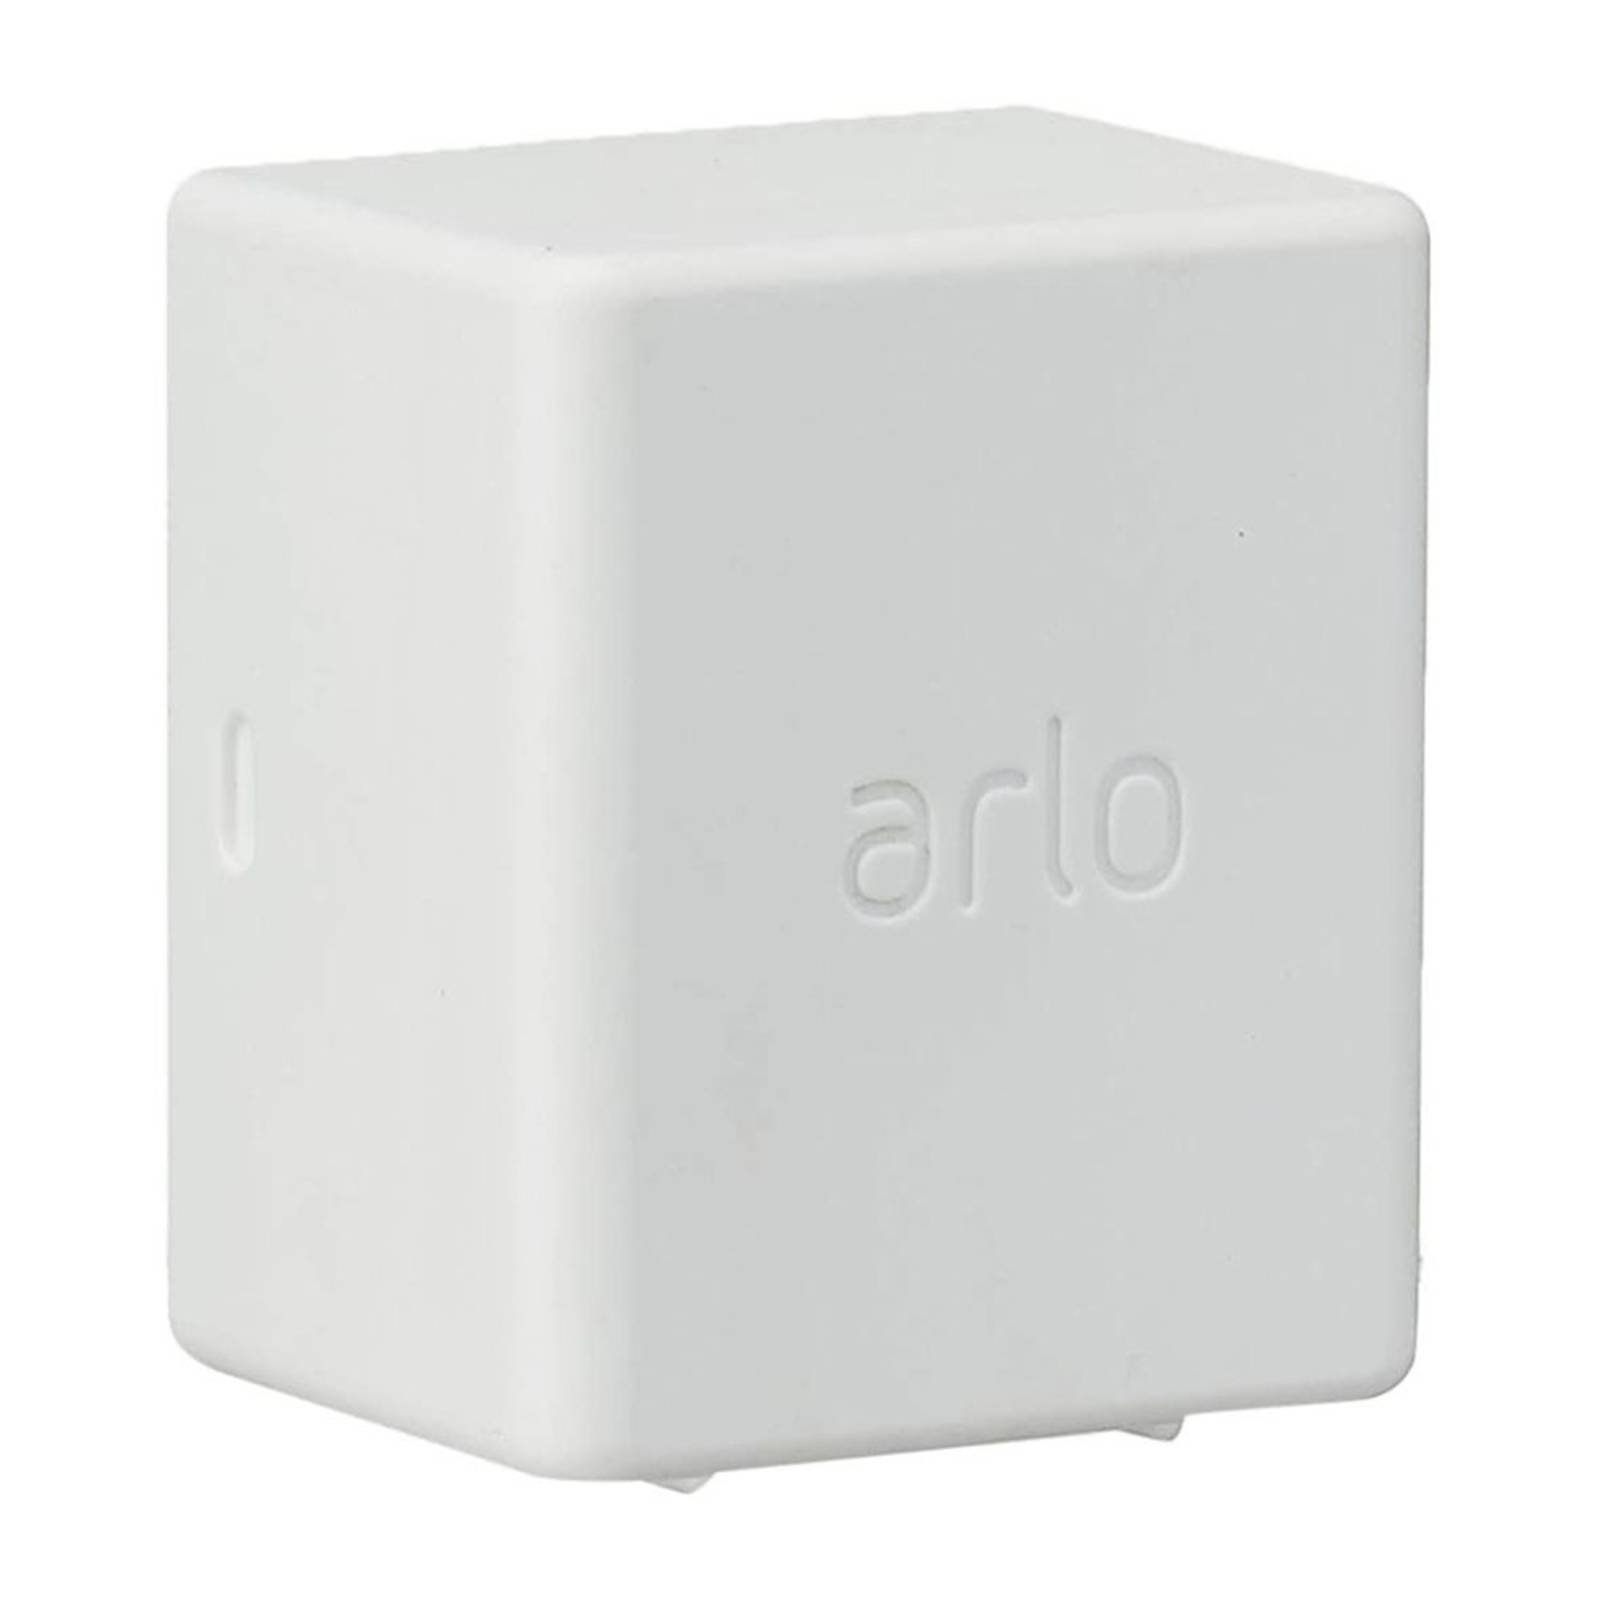 Image of Arlo batterie rechange pour caméra Ultra, Pro3 